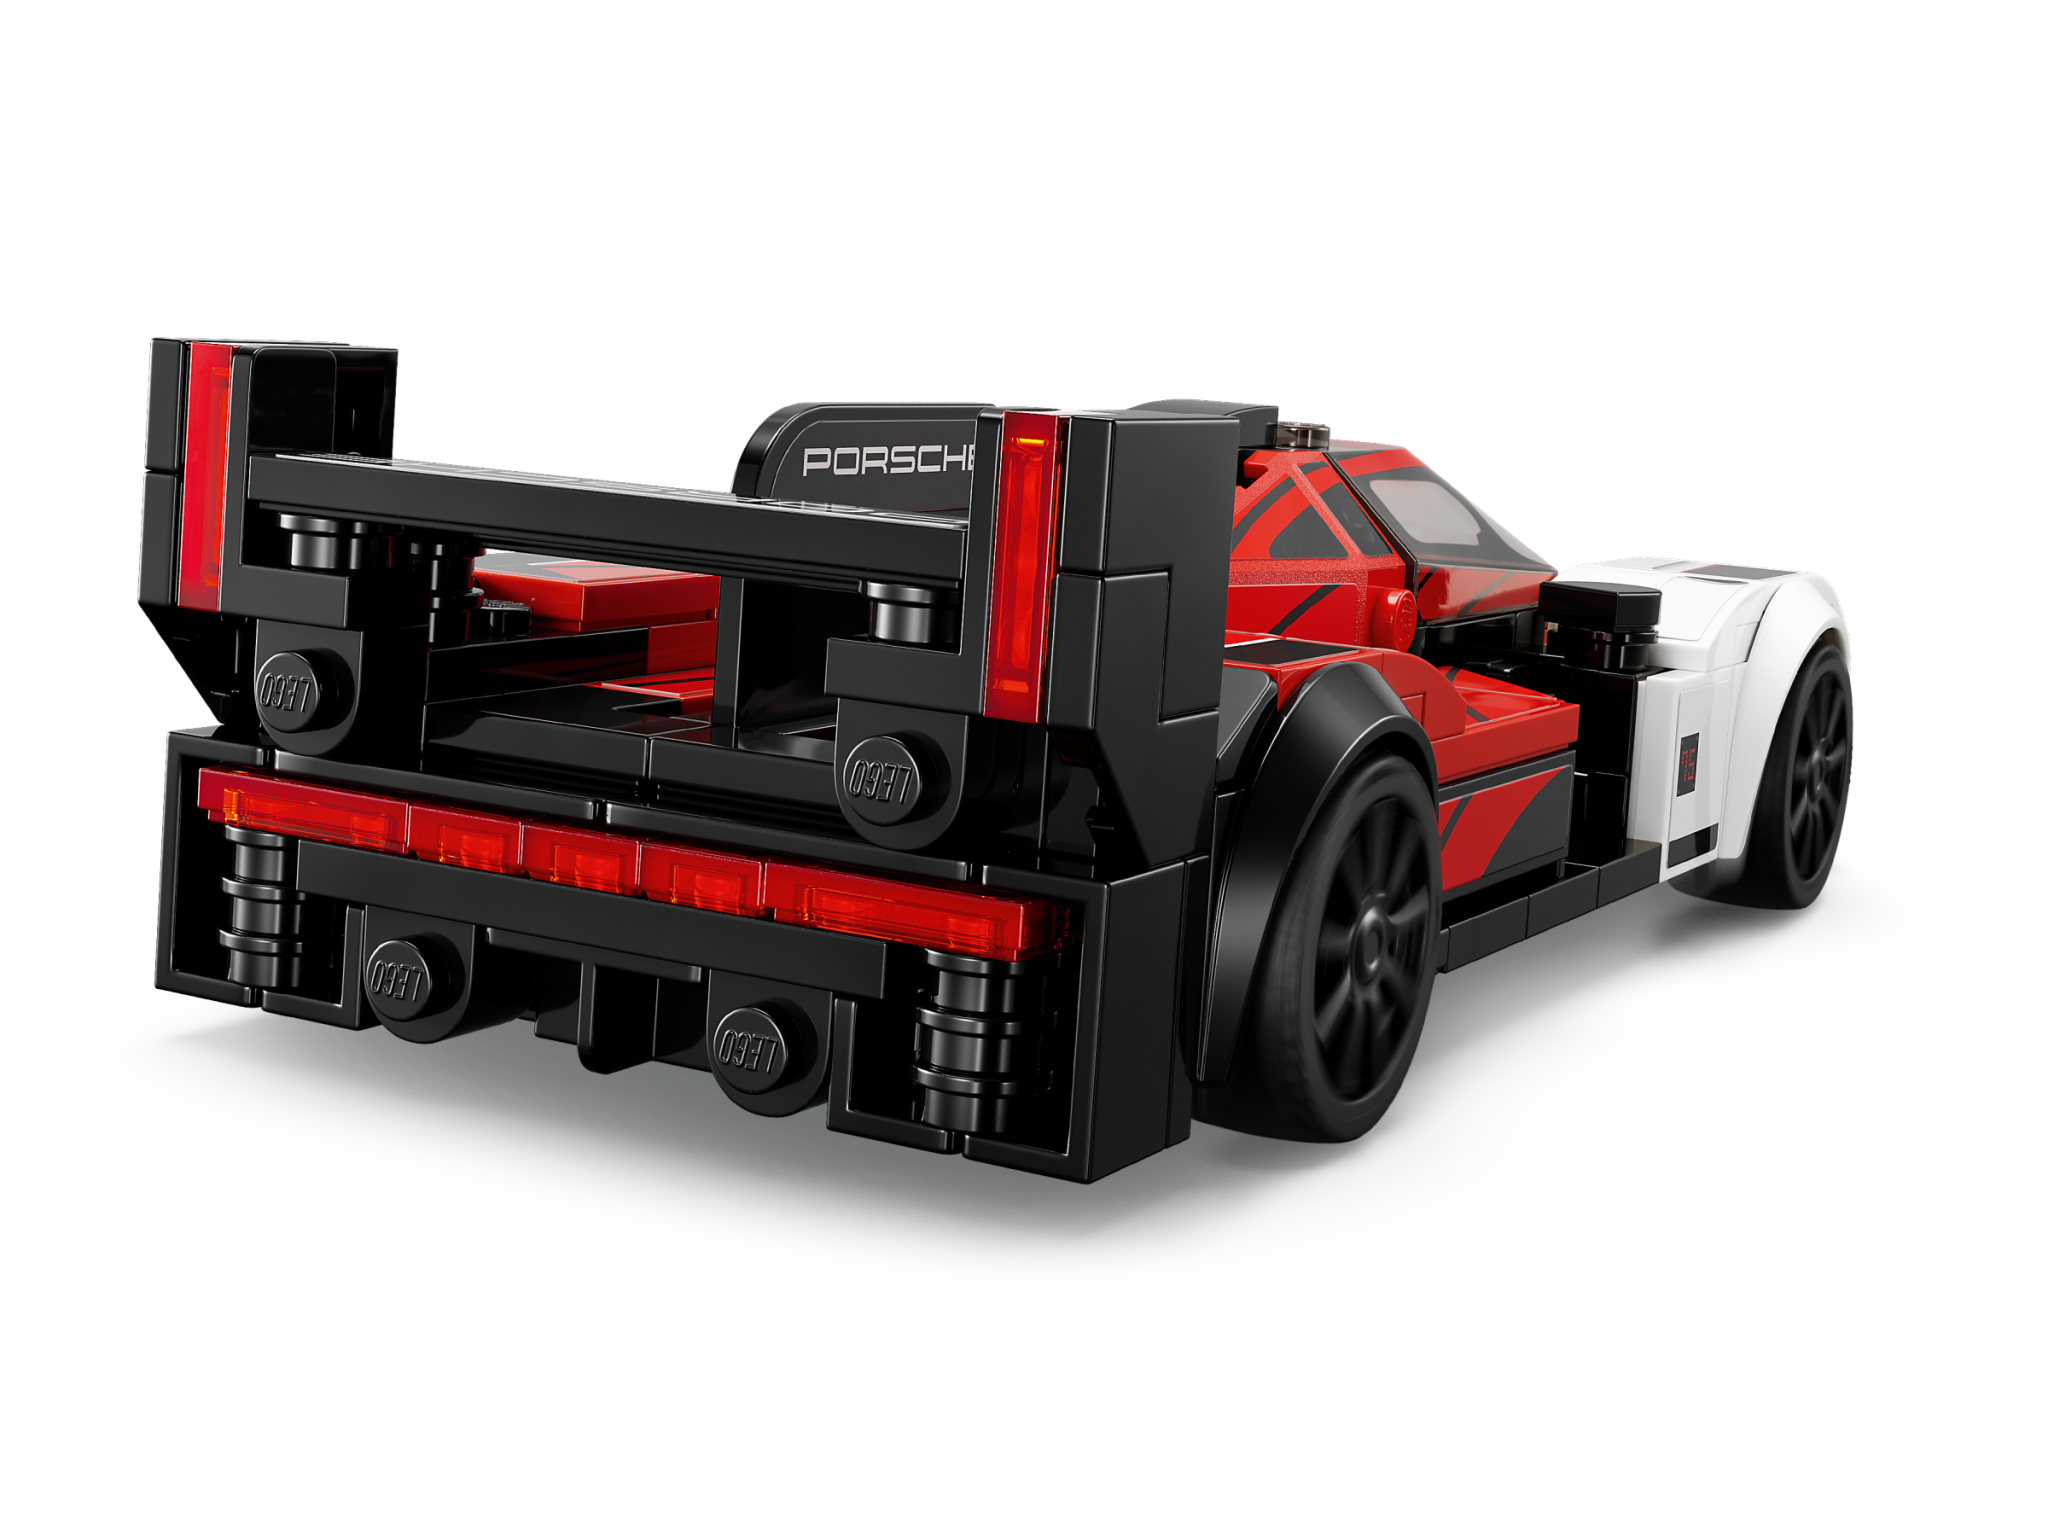 Lego 76916 Speed Champions - Porsche 963 - Maitre des Jeux